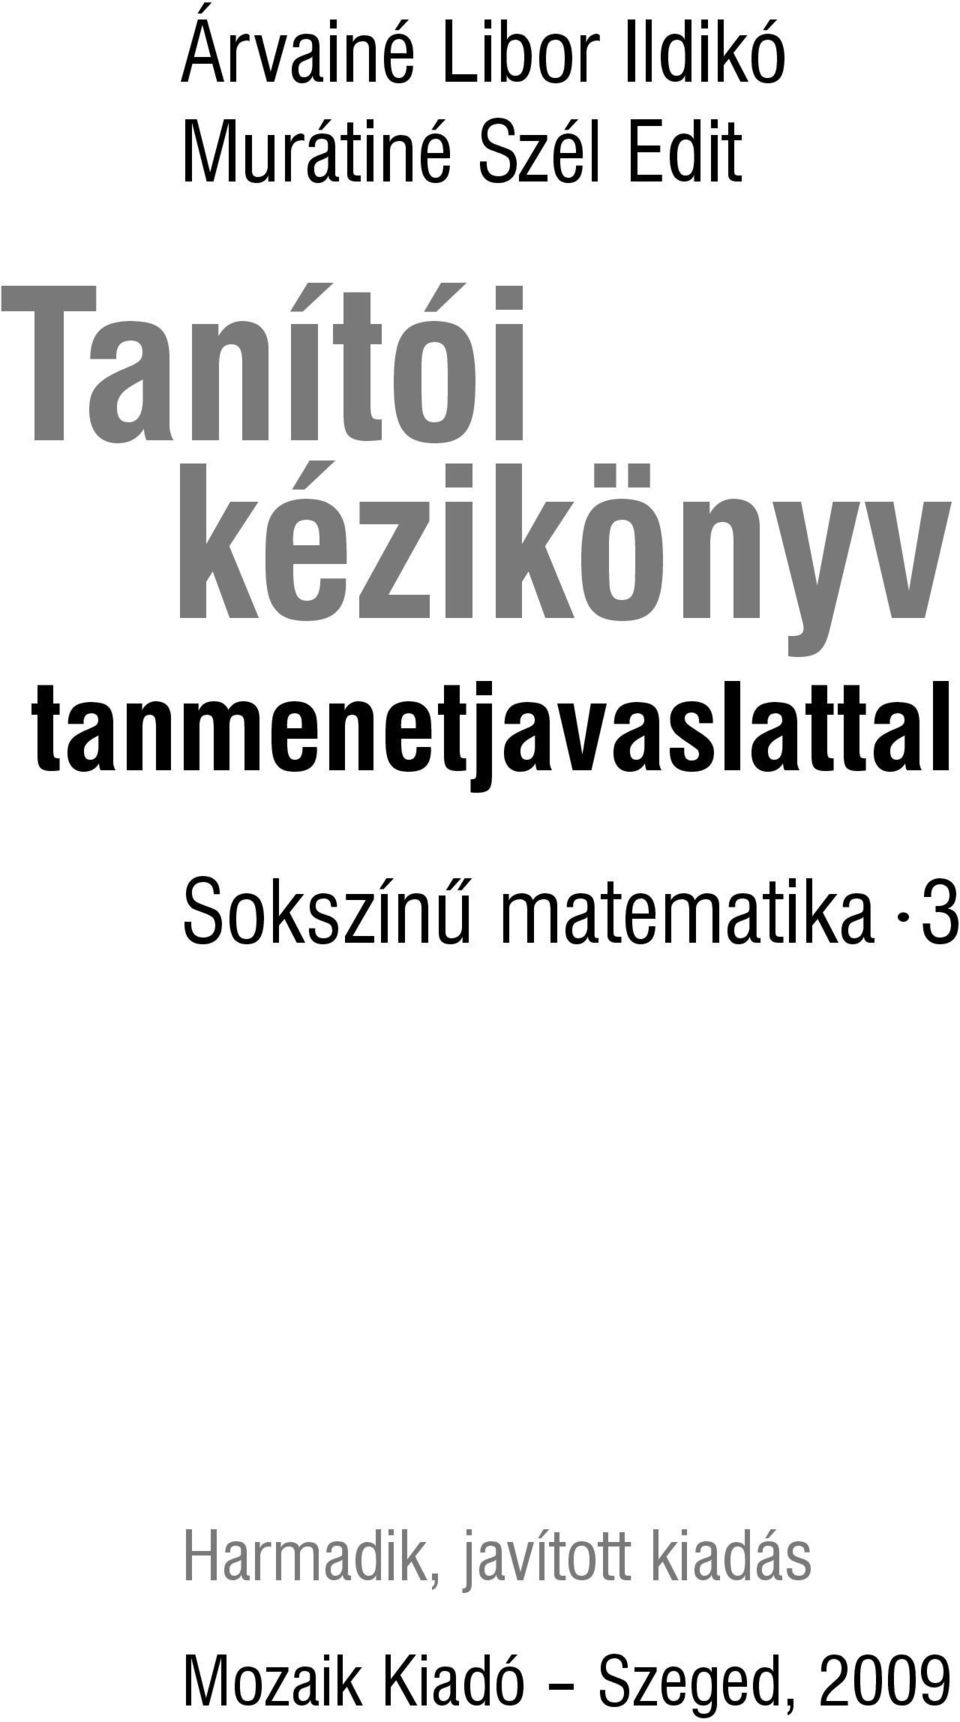 Árvainé Libor Ildikó Murátiné Szél Edit. Tanítói kézikönyv.  tanmenetjavaslattal. Sokszínû matematika. 3 - PDF Free Download